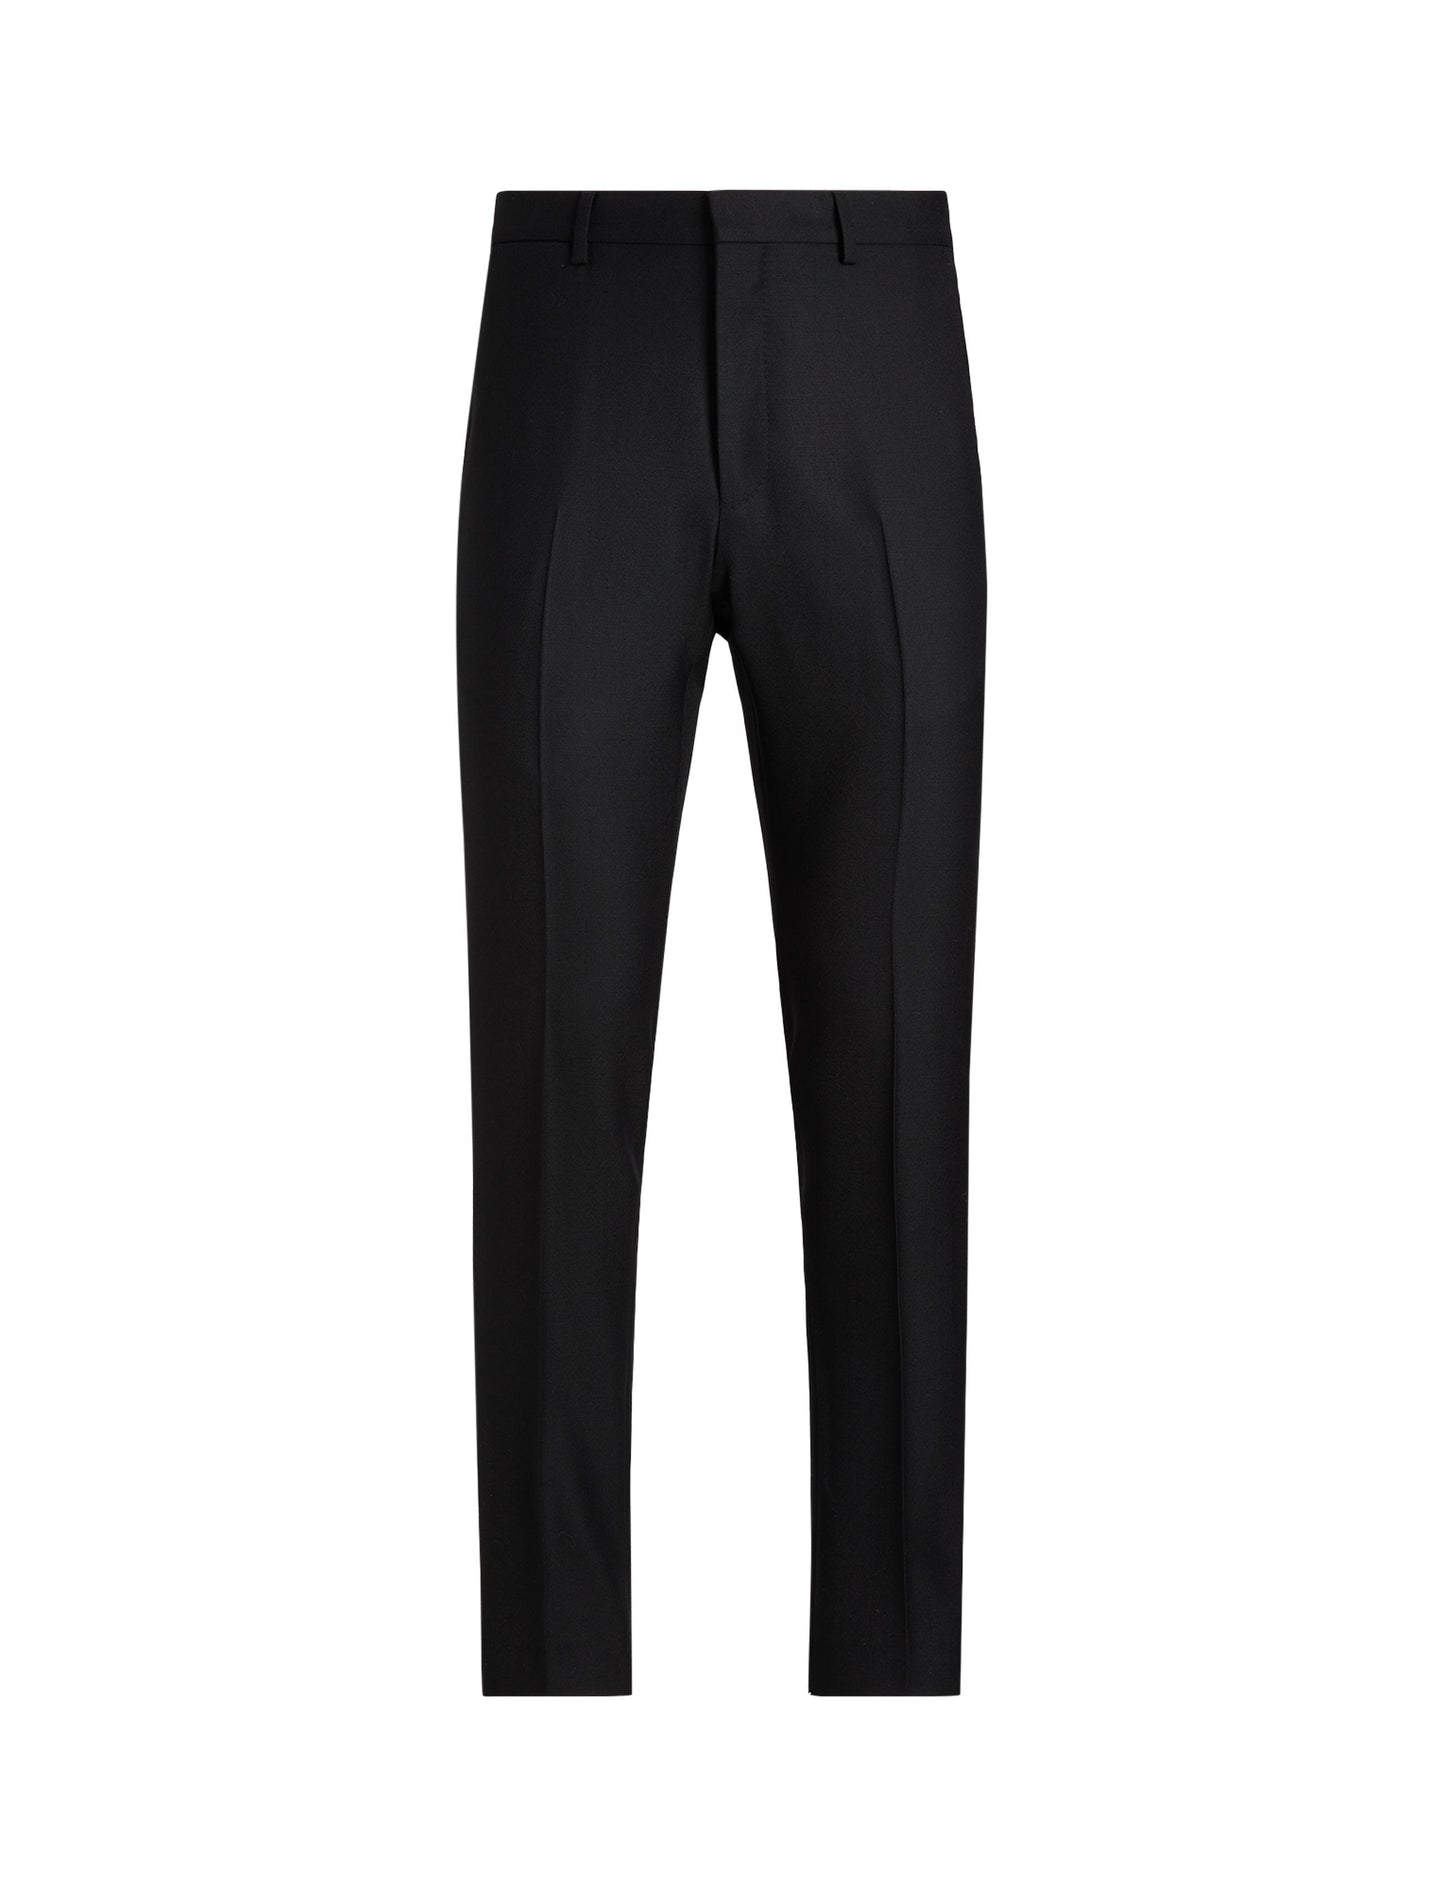 Polo Ralph Lauren Oxford Suit Black